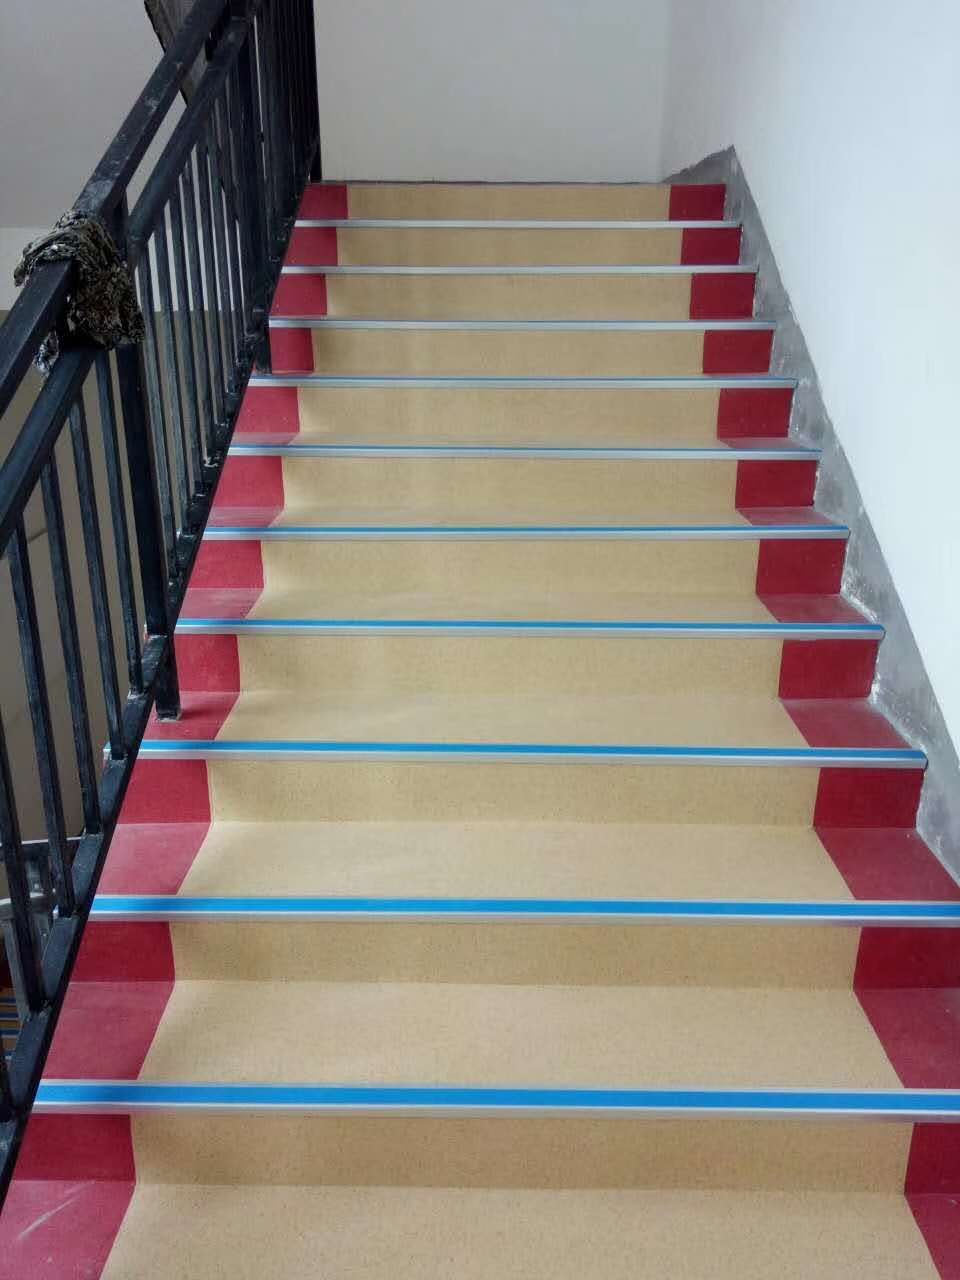 同时,pvc塑胶地板也广泛应用在楼梯踏步系统中.